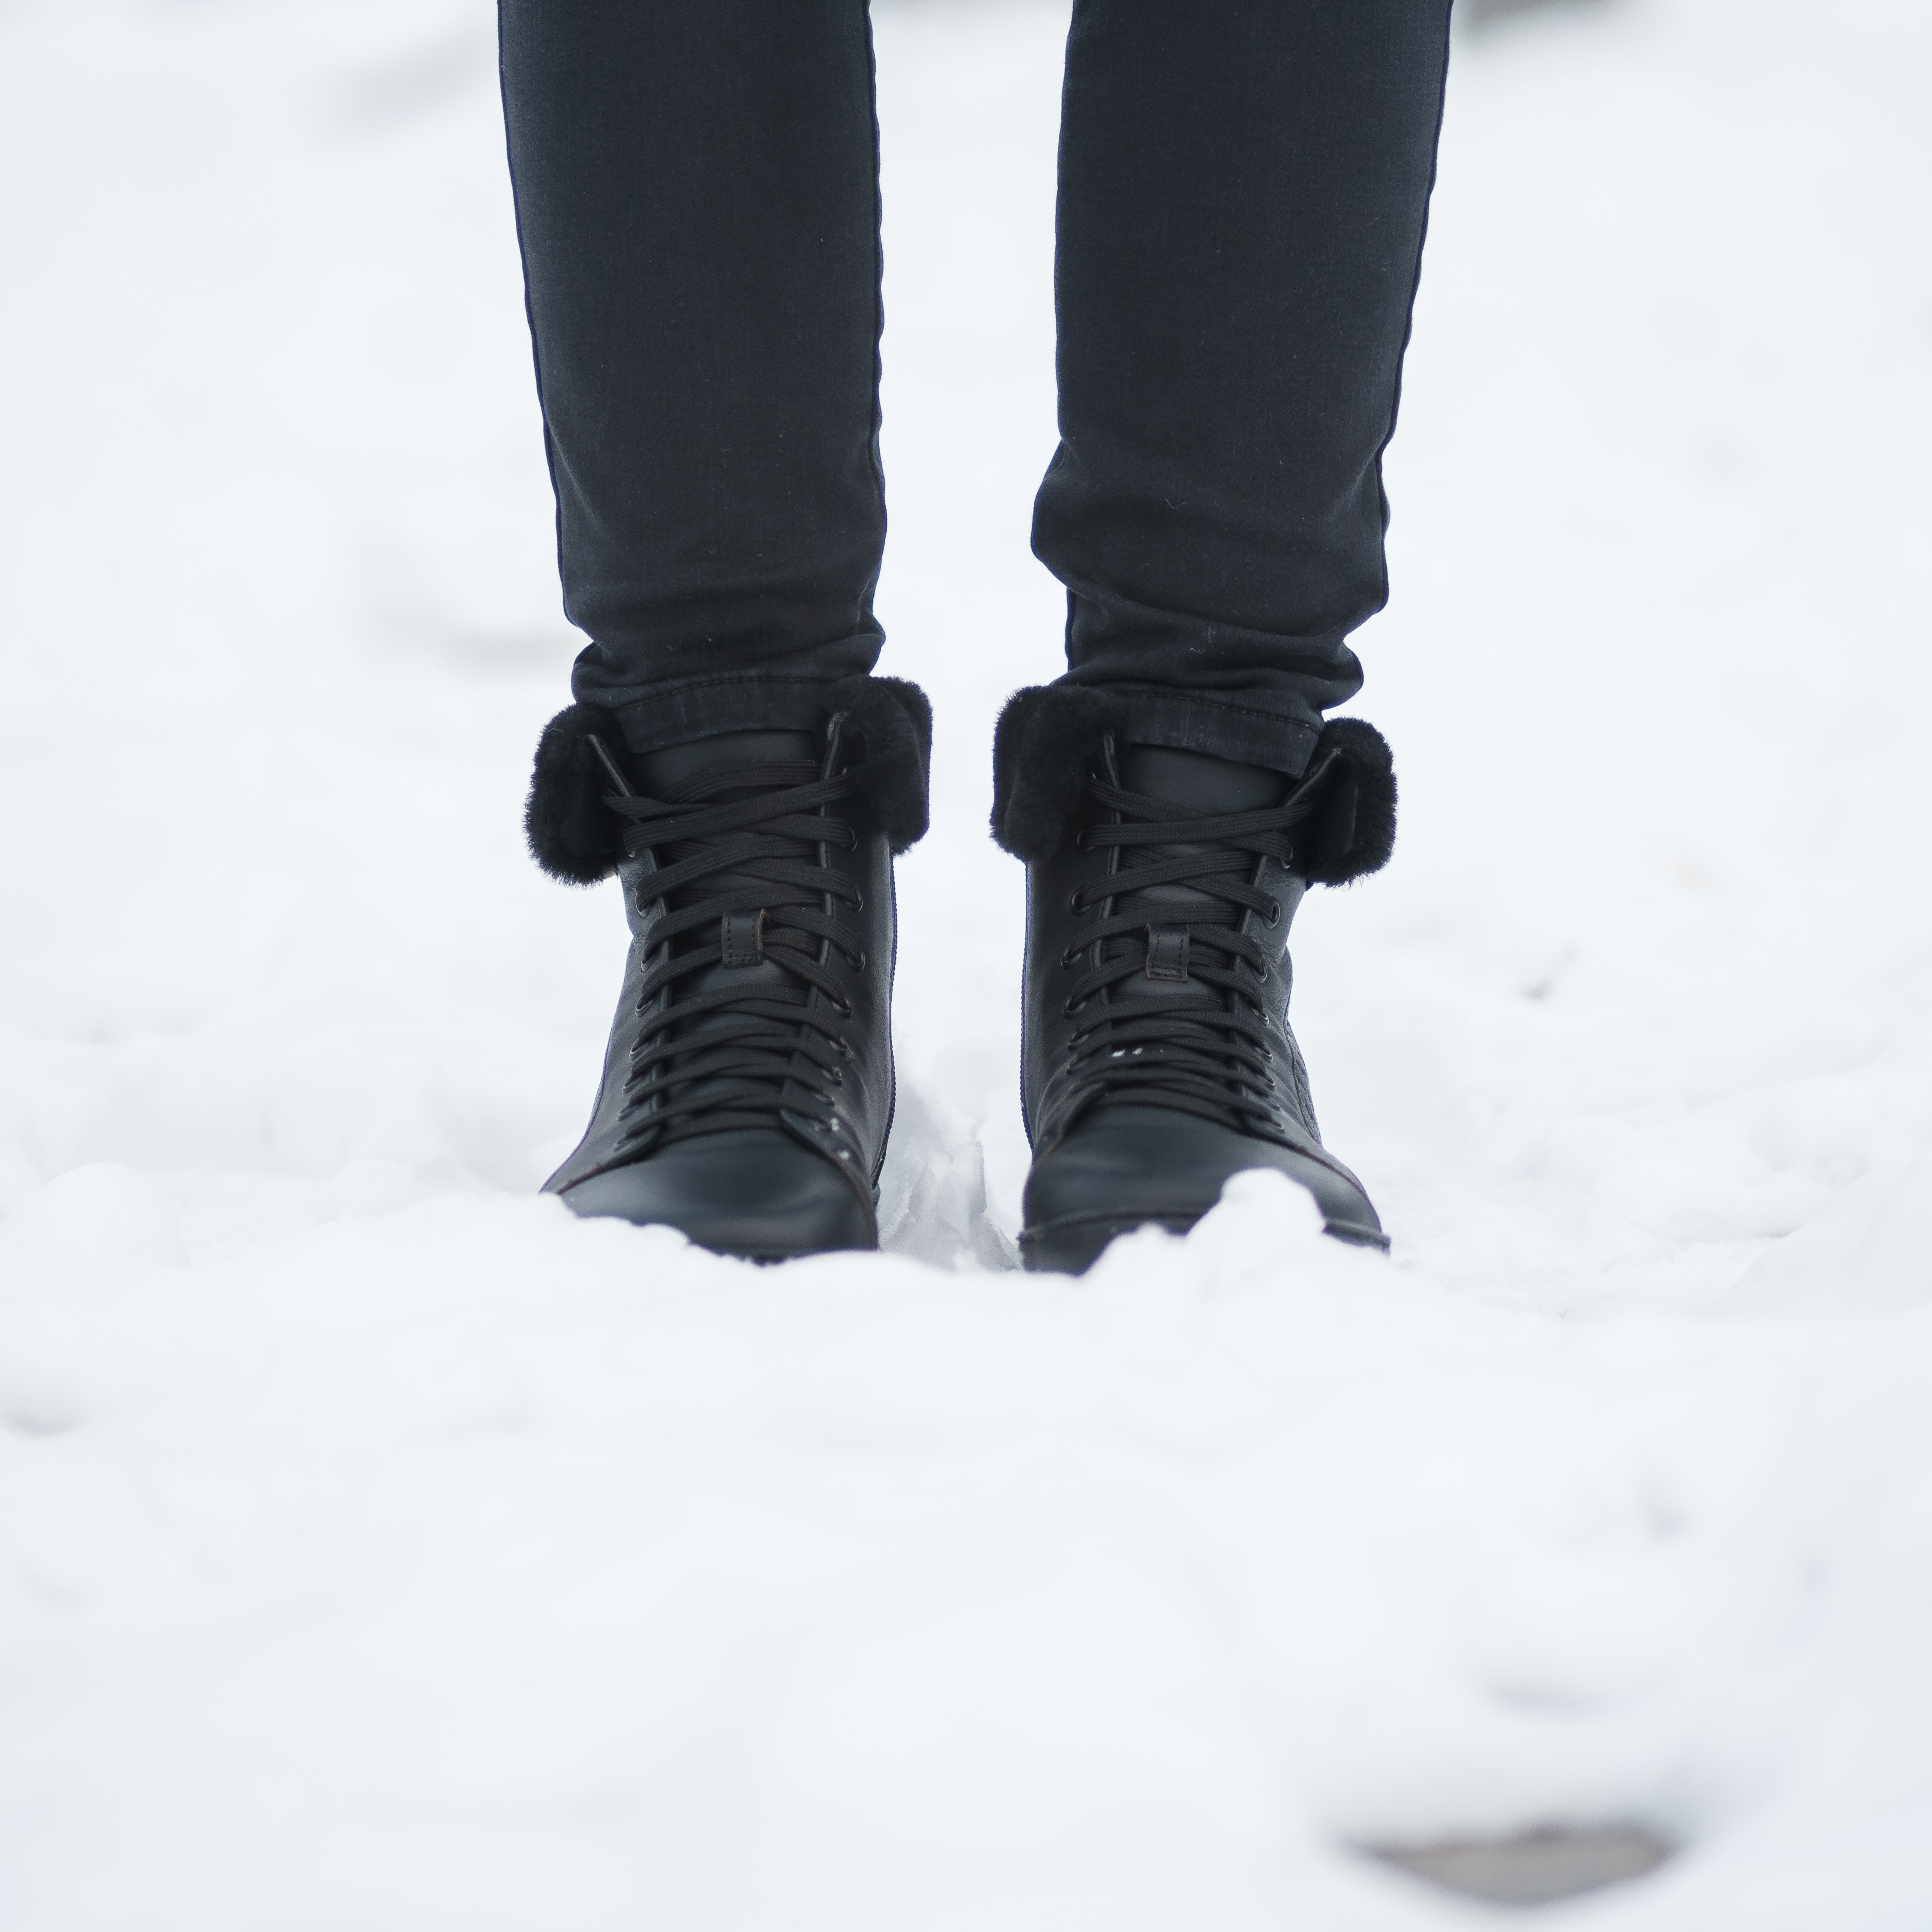 Ochrana vašich kožených topánok: Ako predchádzať škodám od soli na uliciach počas zimnej sezóny